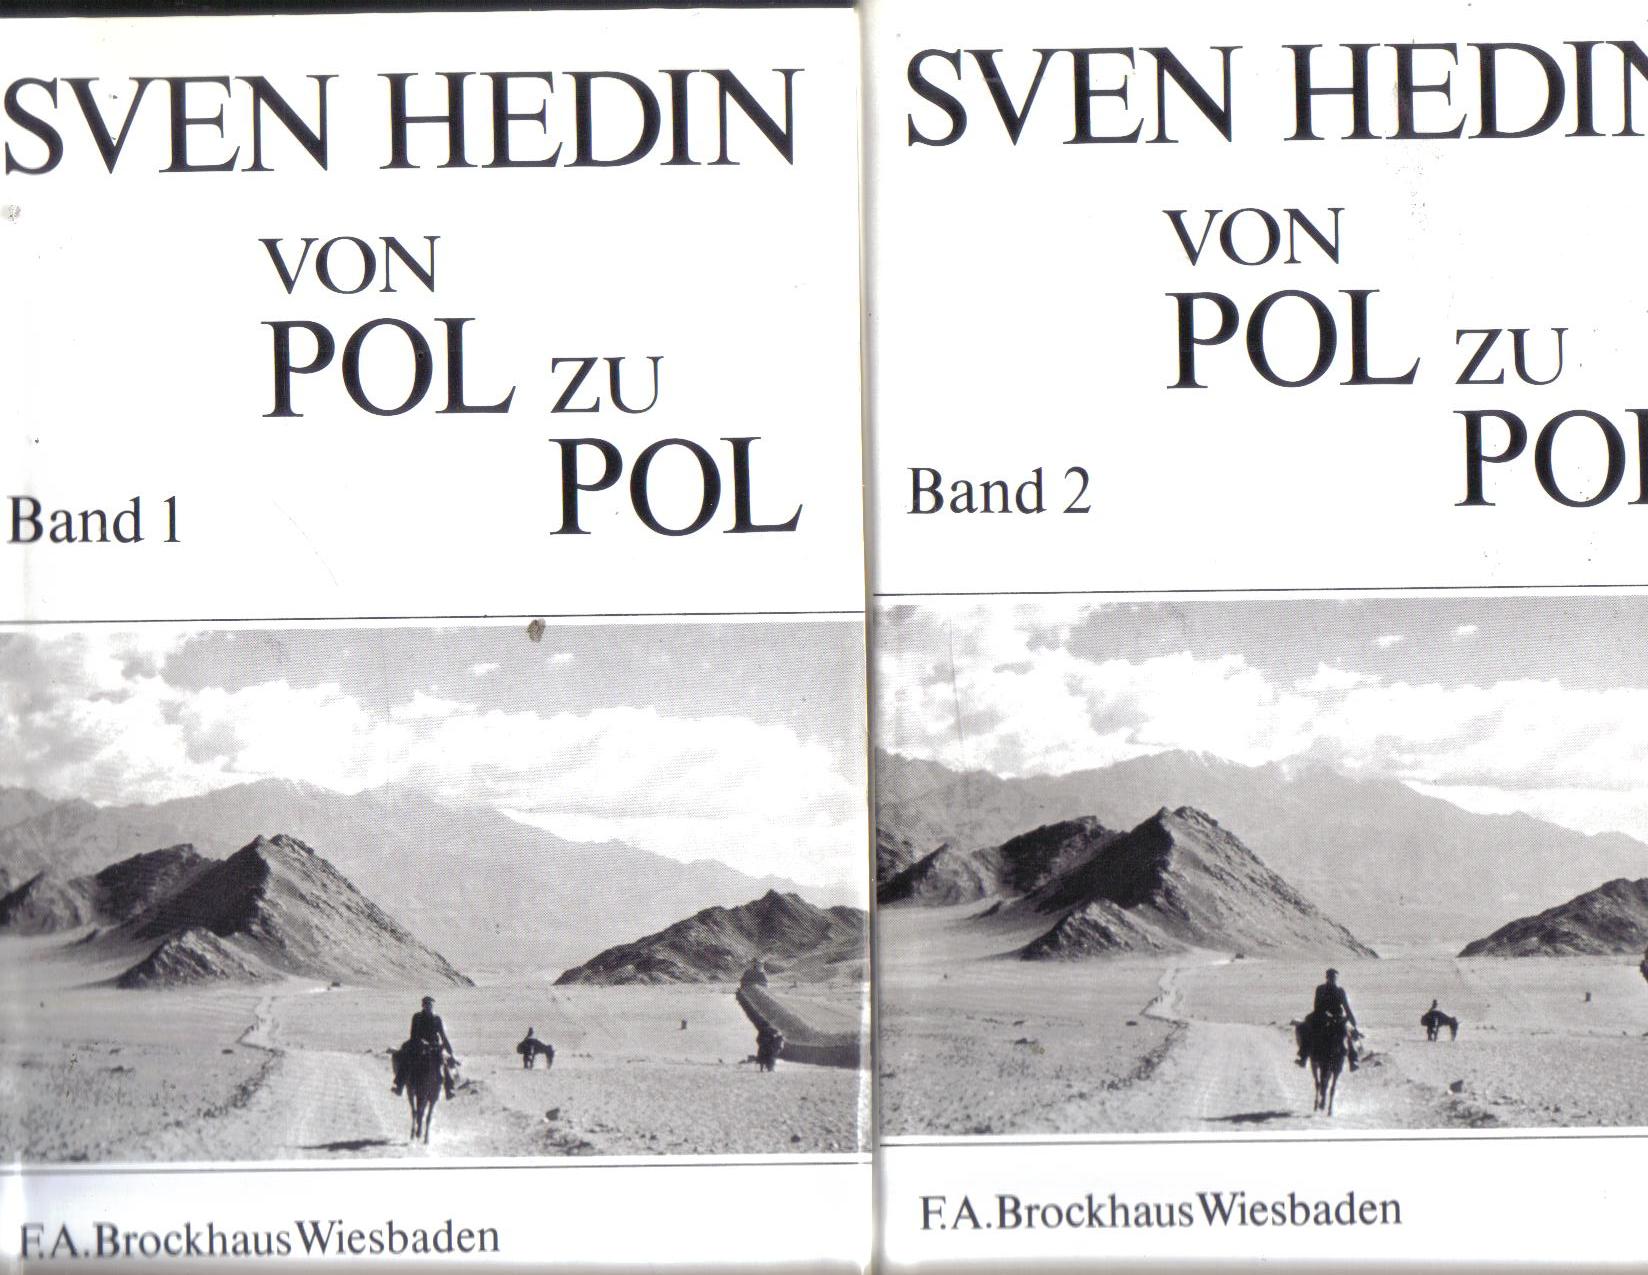 Von Pol zu PolSven Hedin  Band 1 / Band 2